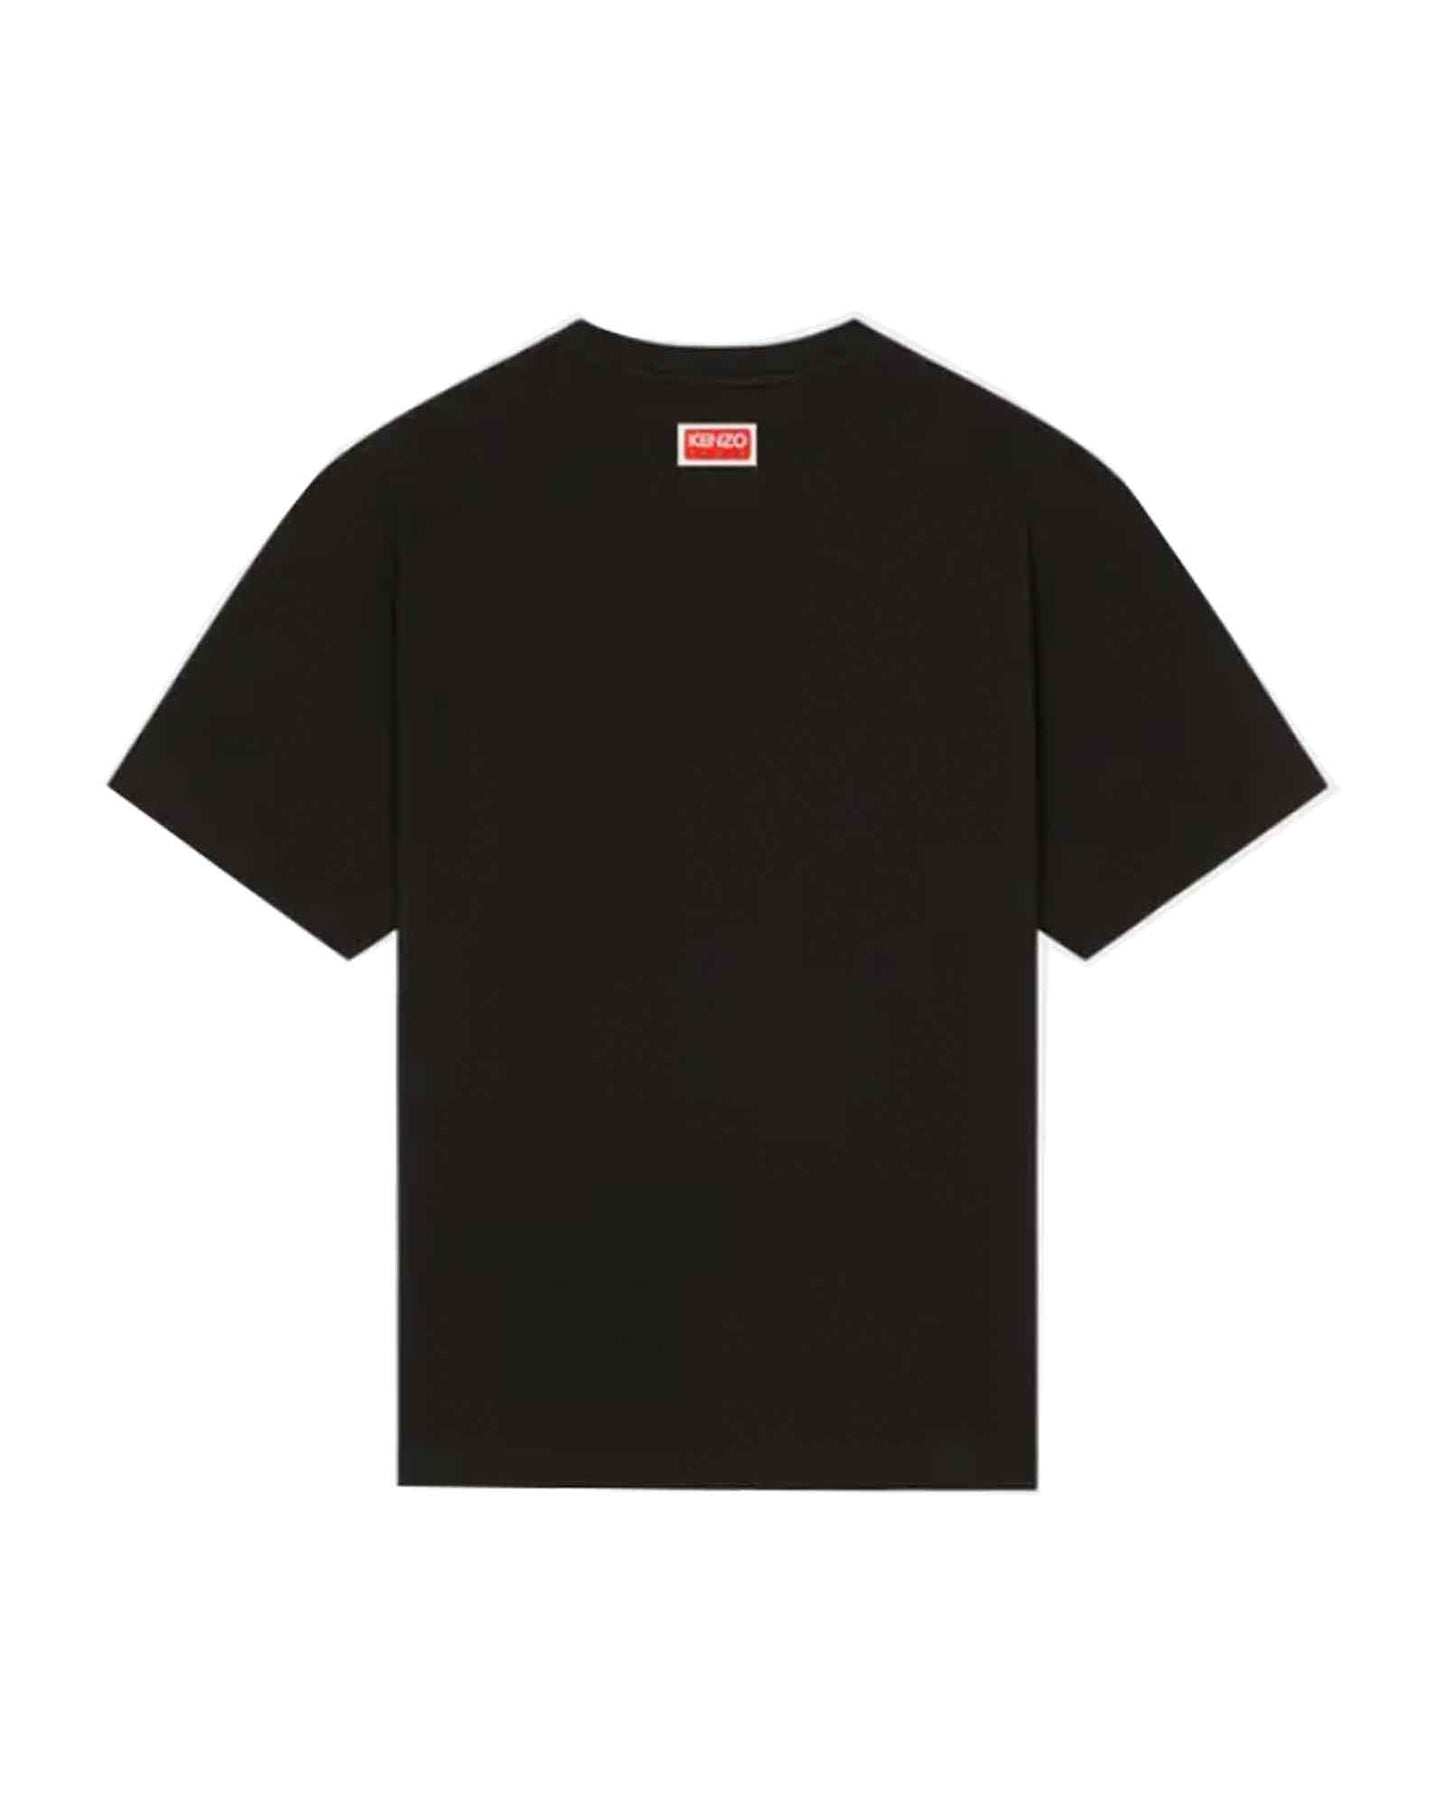 ケンゾー/KEN ZO OVERSIZE T-SHIRT/Tシャツ/Black